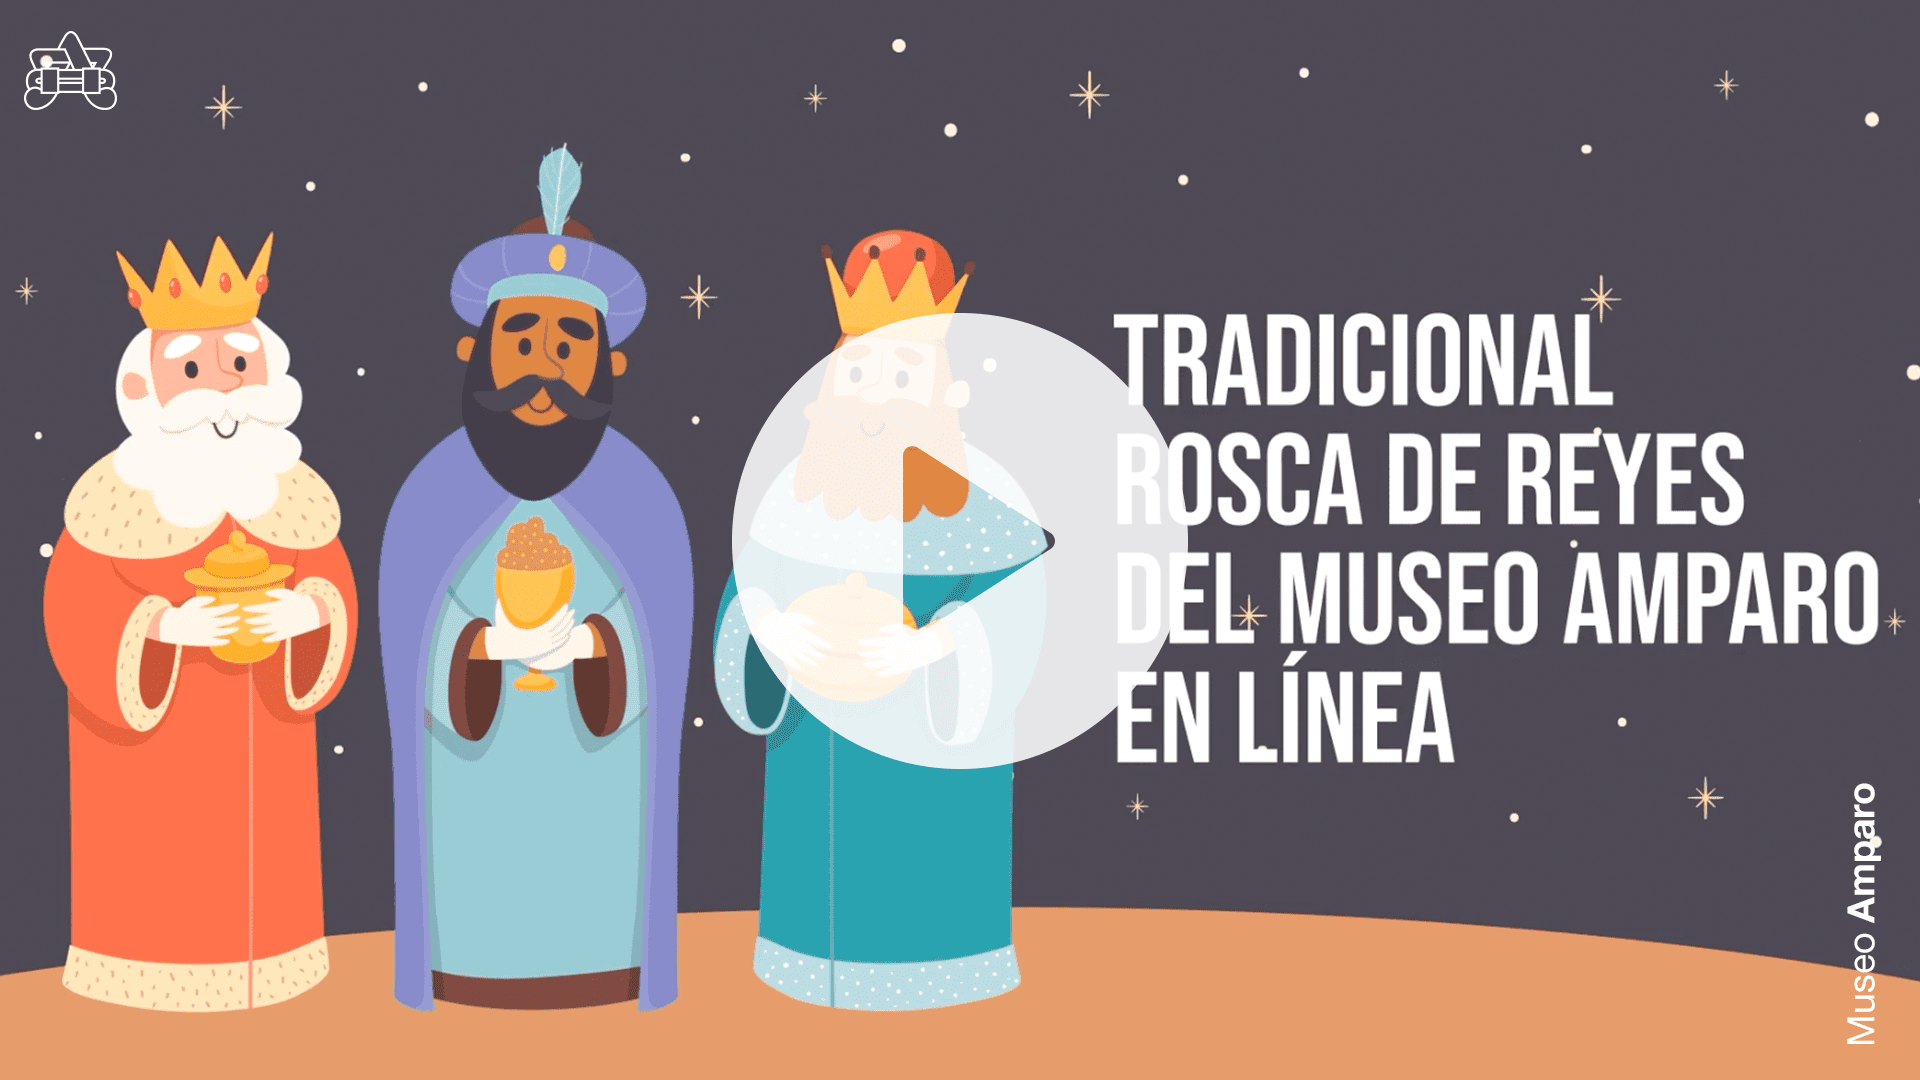 Tradicional Rosca de Reyes en línea 2021 | Museo Amparo, Puebla | Museo Amparo, Puebla.